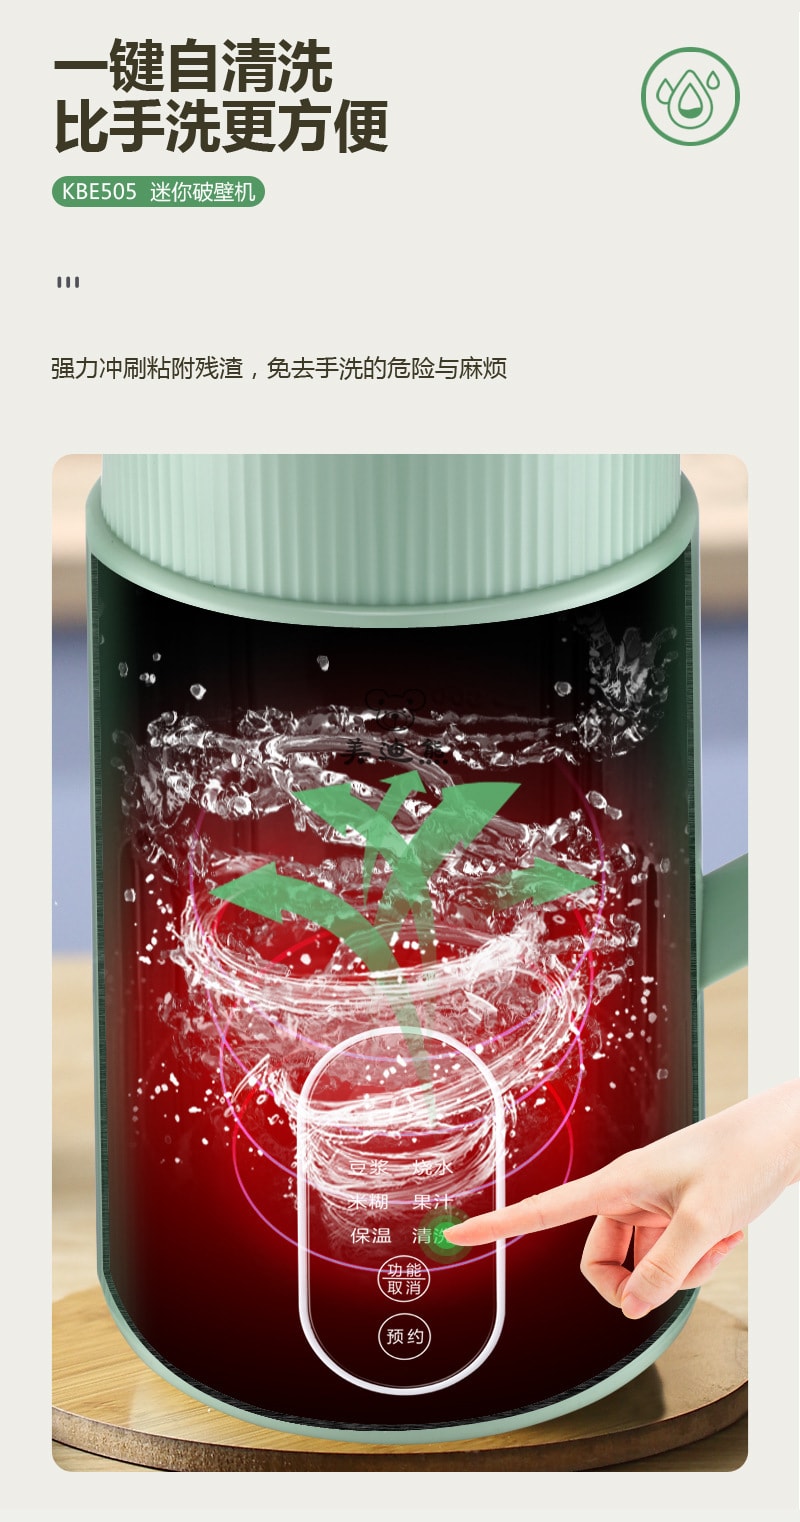 【中國直郵】美迪熊 110V 小型豆漿機家用免過濾多功能迷你榨汁輔食米糊破壁機 綠色